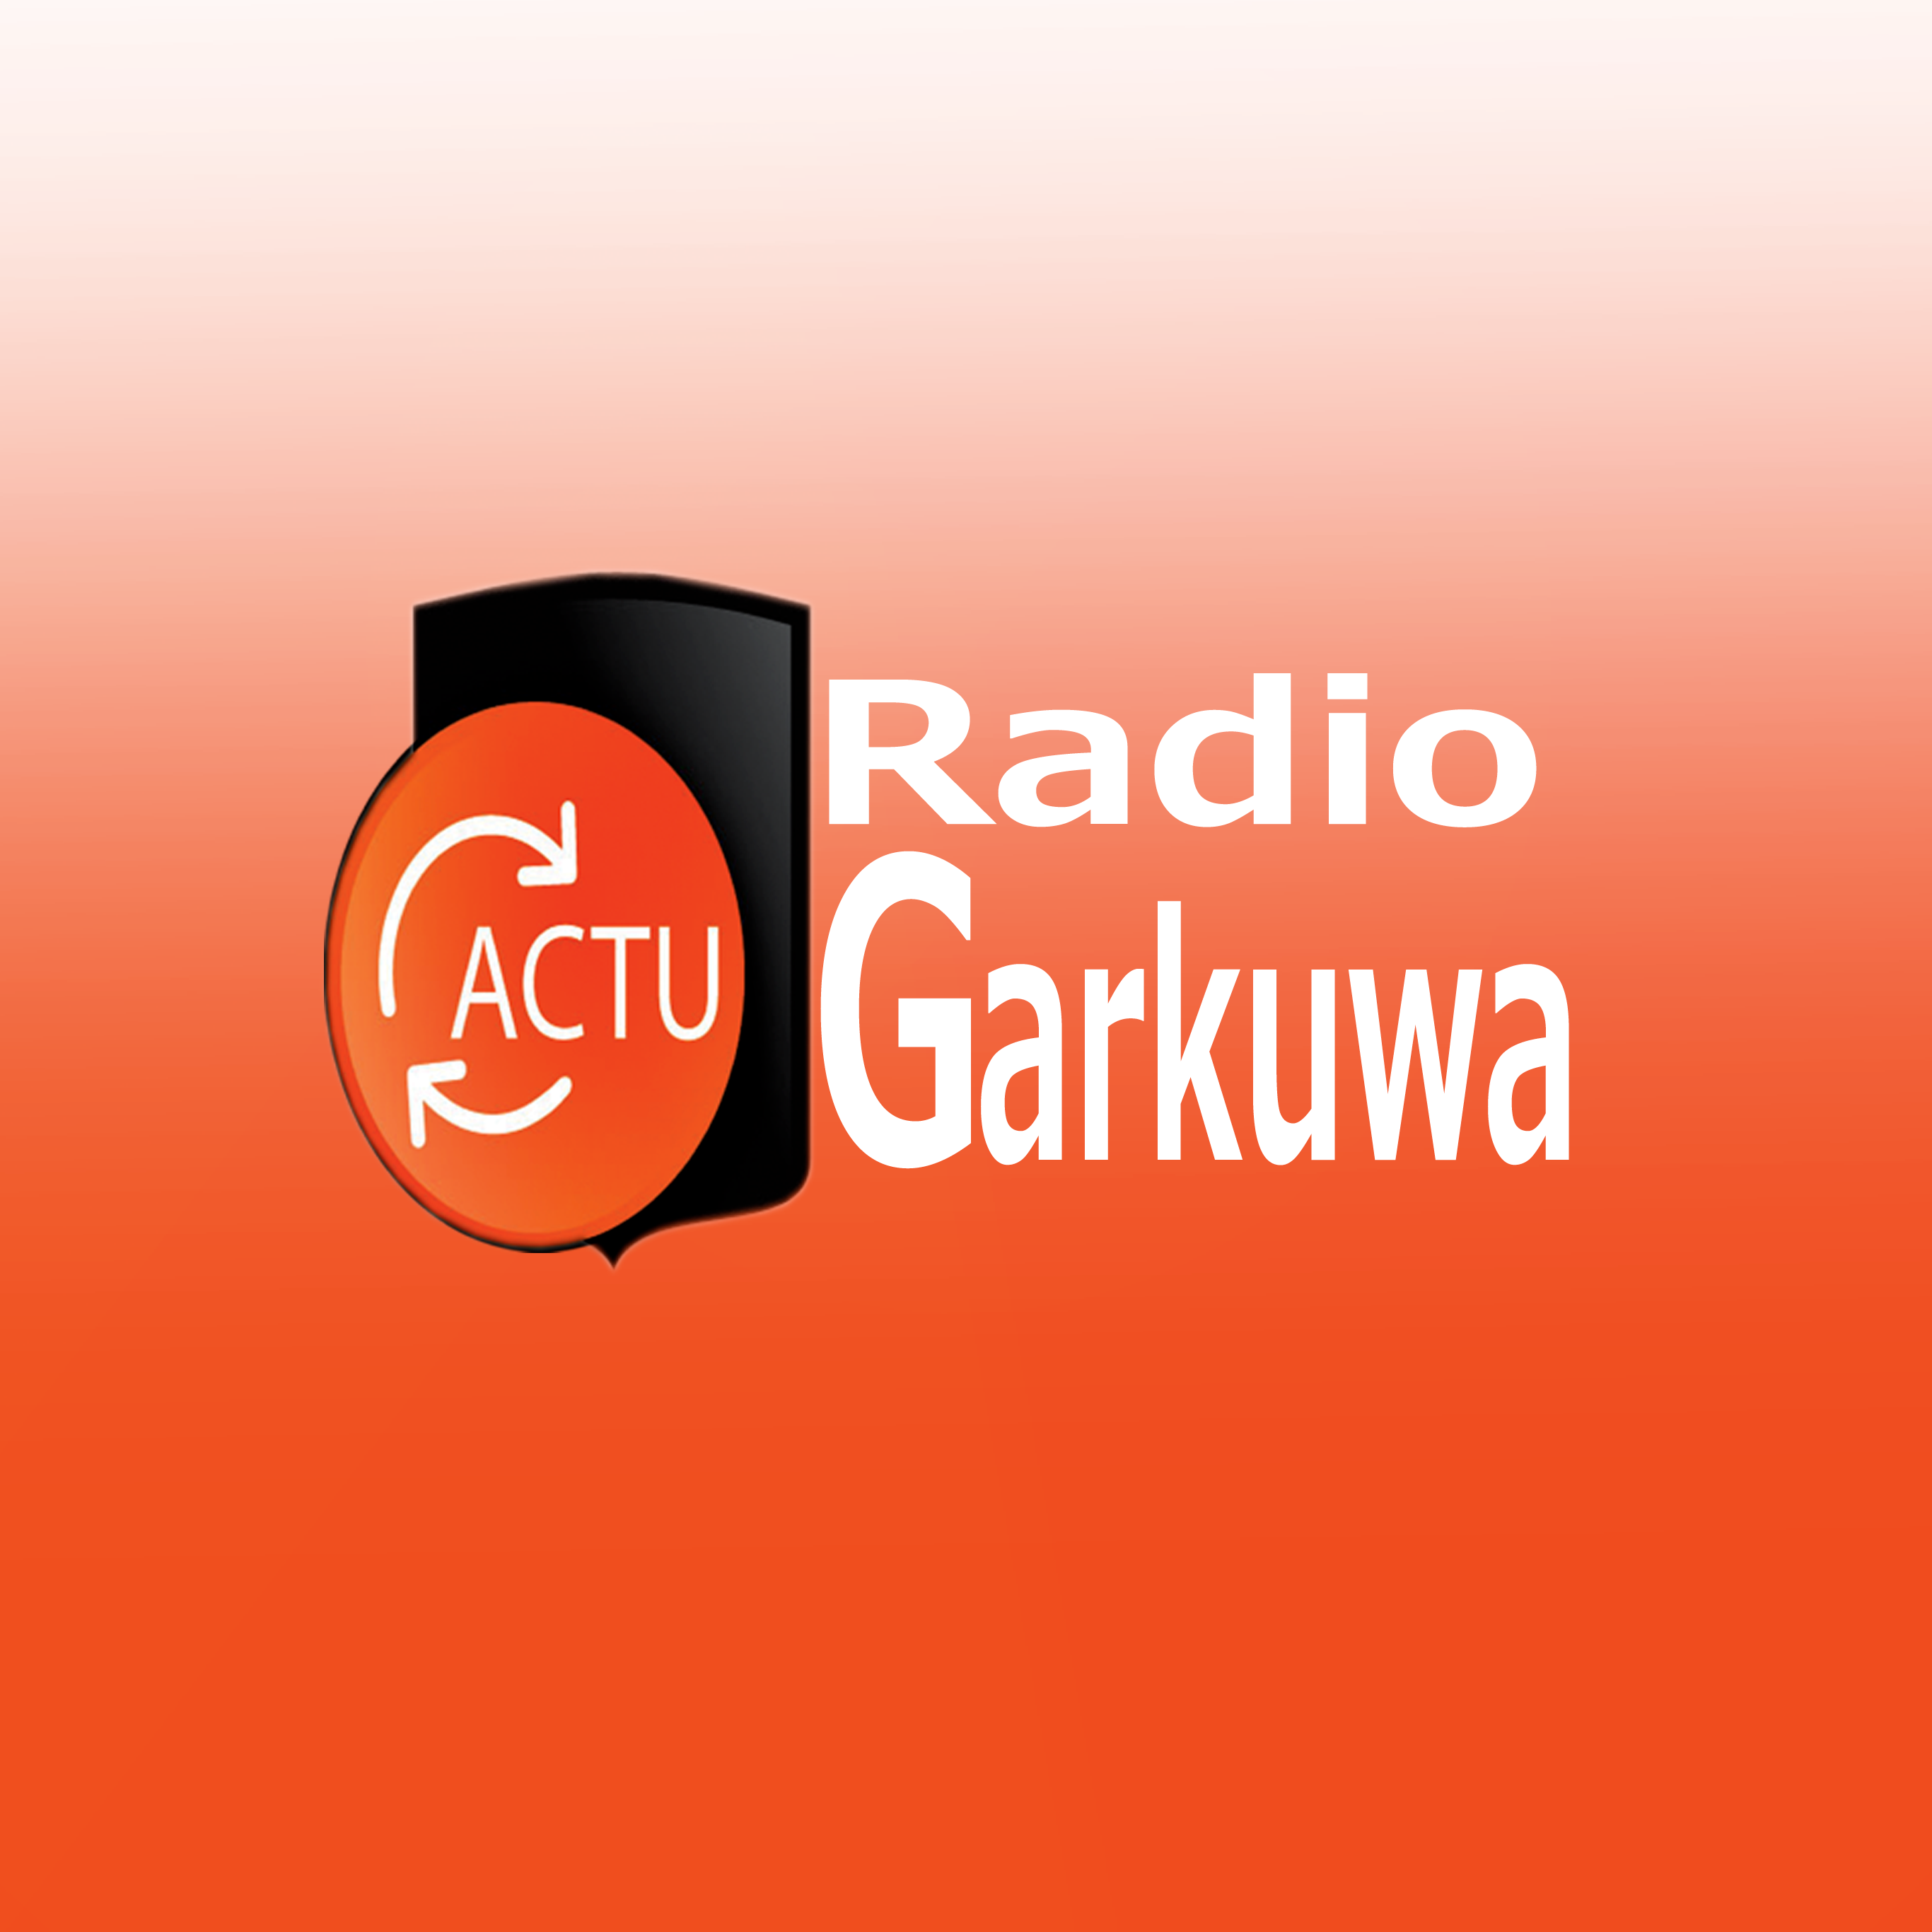 RADIO GARKUWA